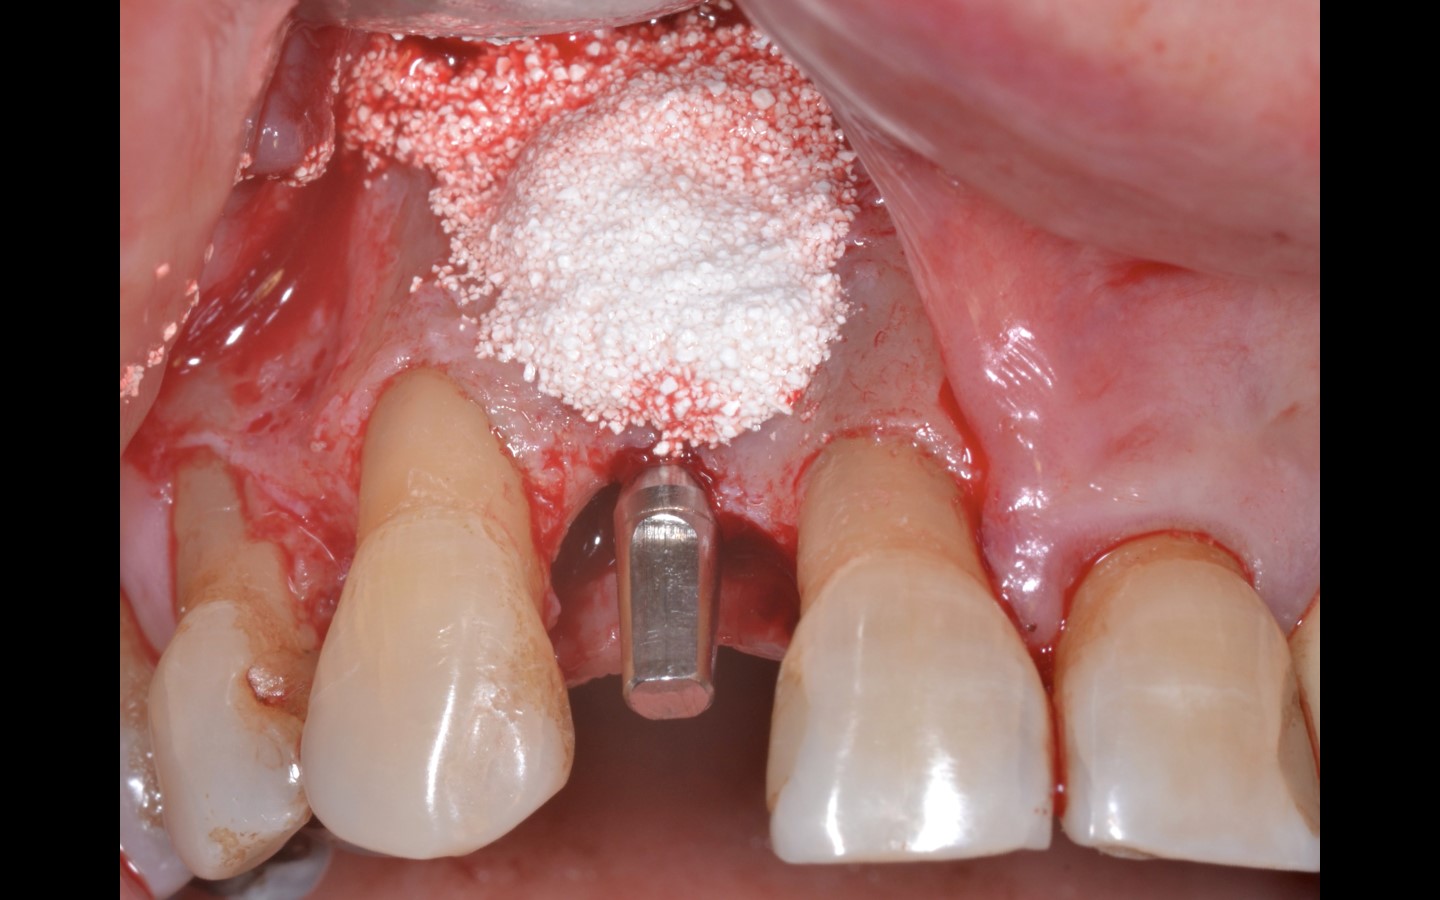 image12 - Reabilitação dento-alveolar com implante Arcsys, enxerto conjuntivo e substituto ósseo Nanosynt